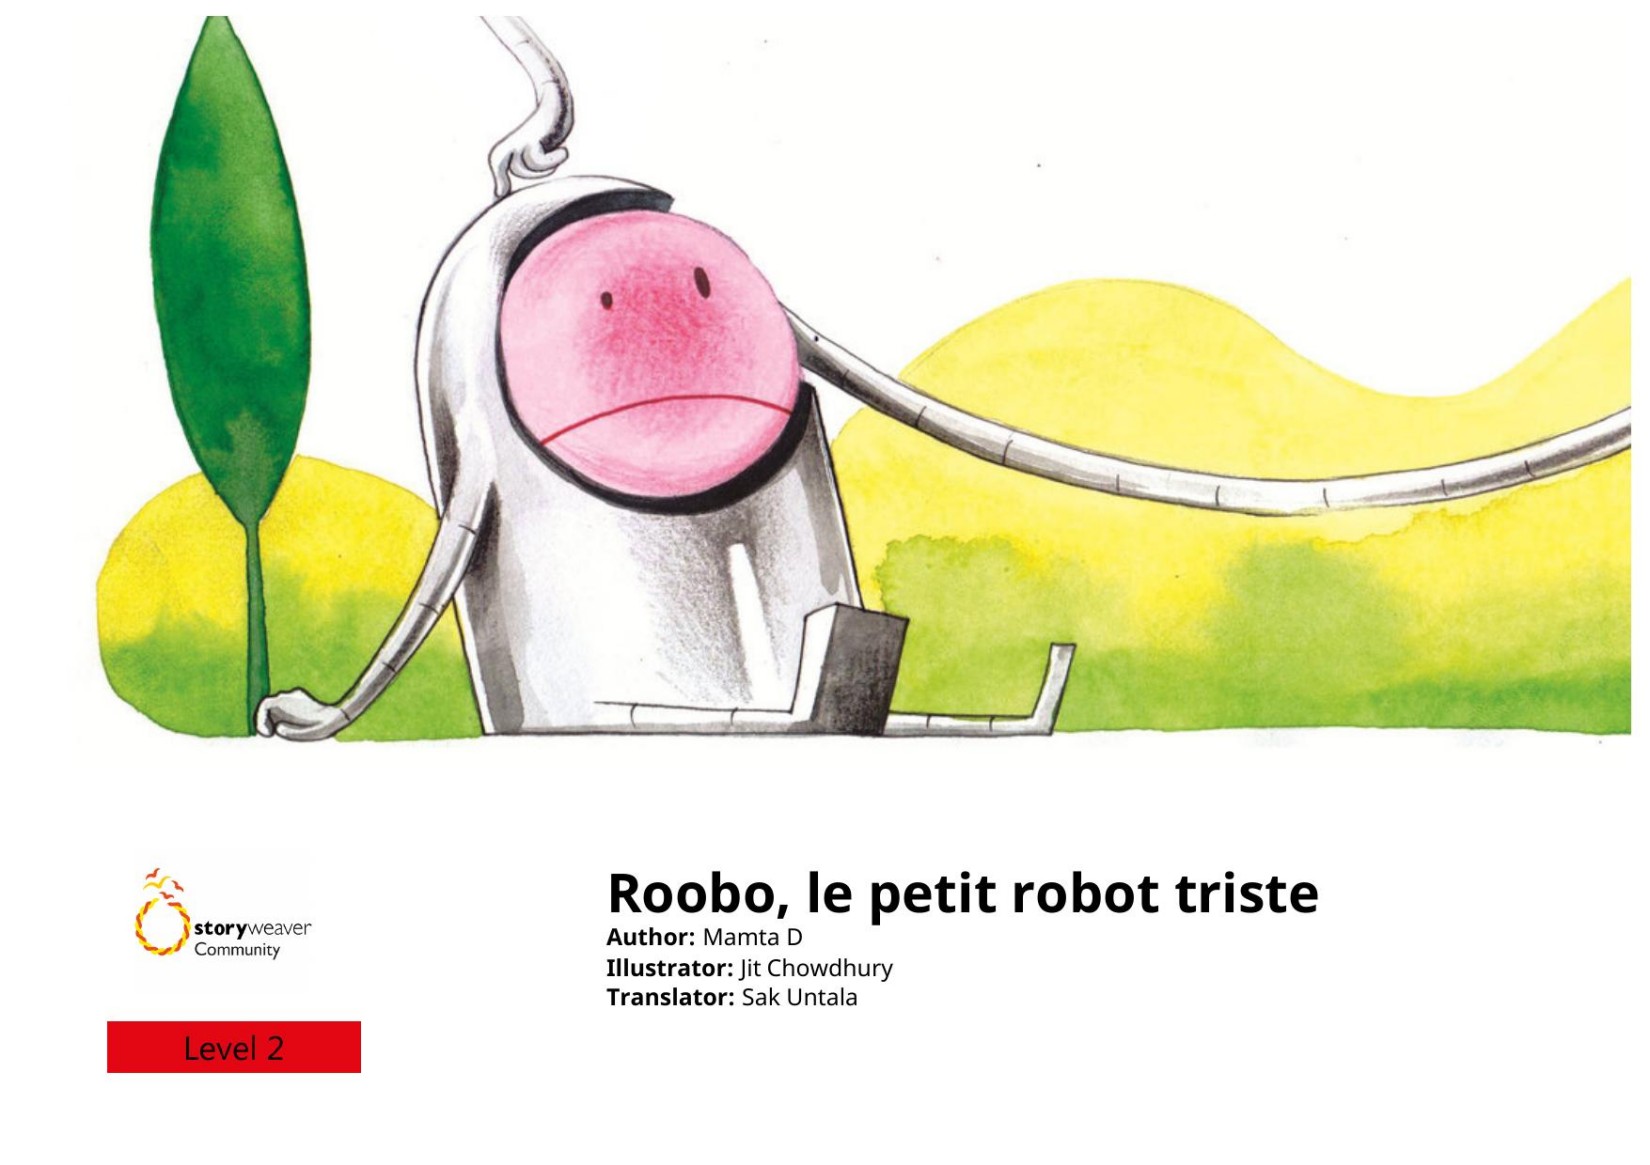 Roobo, le petit robot triste